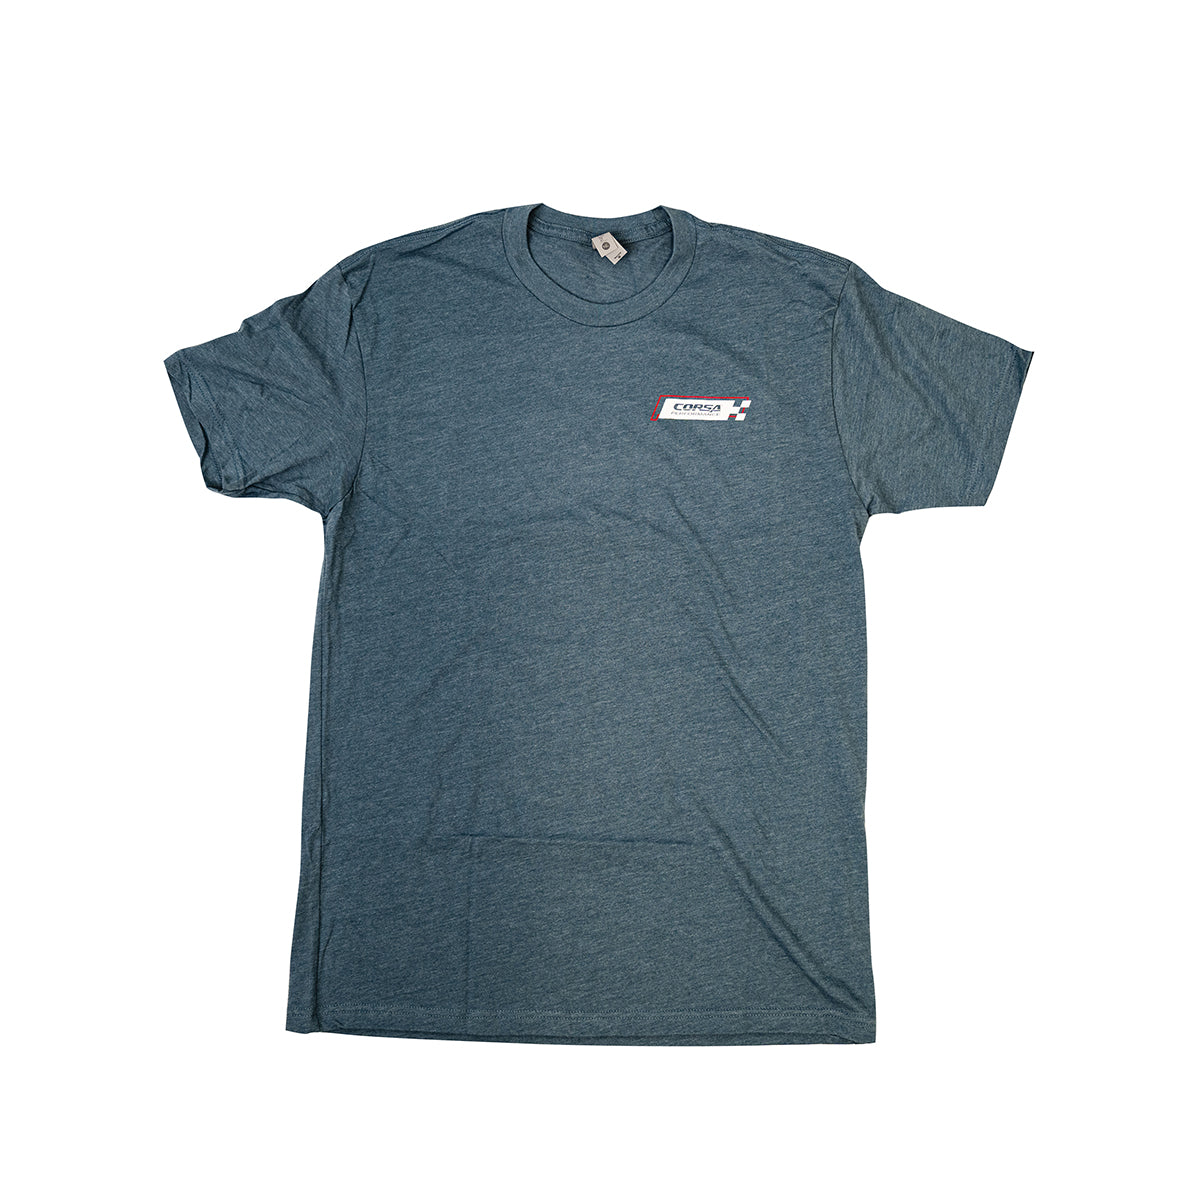 Indigo / CORSA Men's T-Shirt | Corvettes at CORSA '23